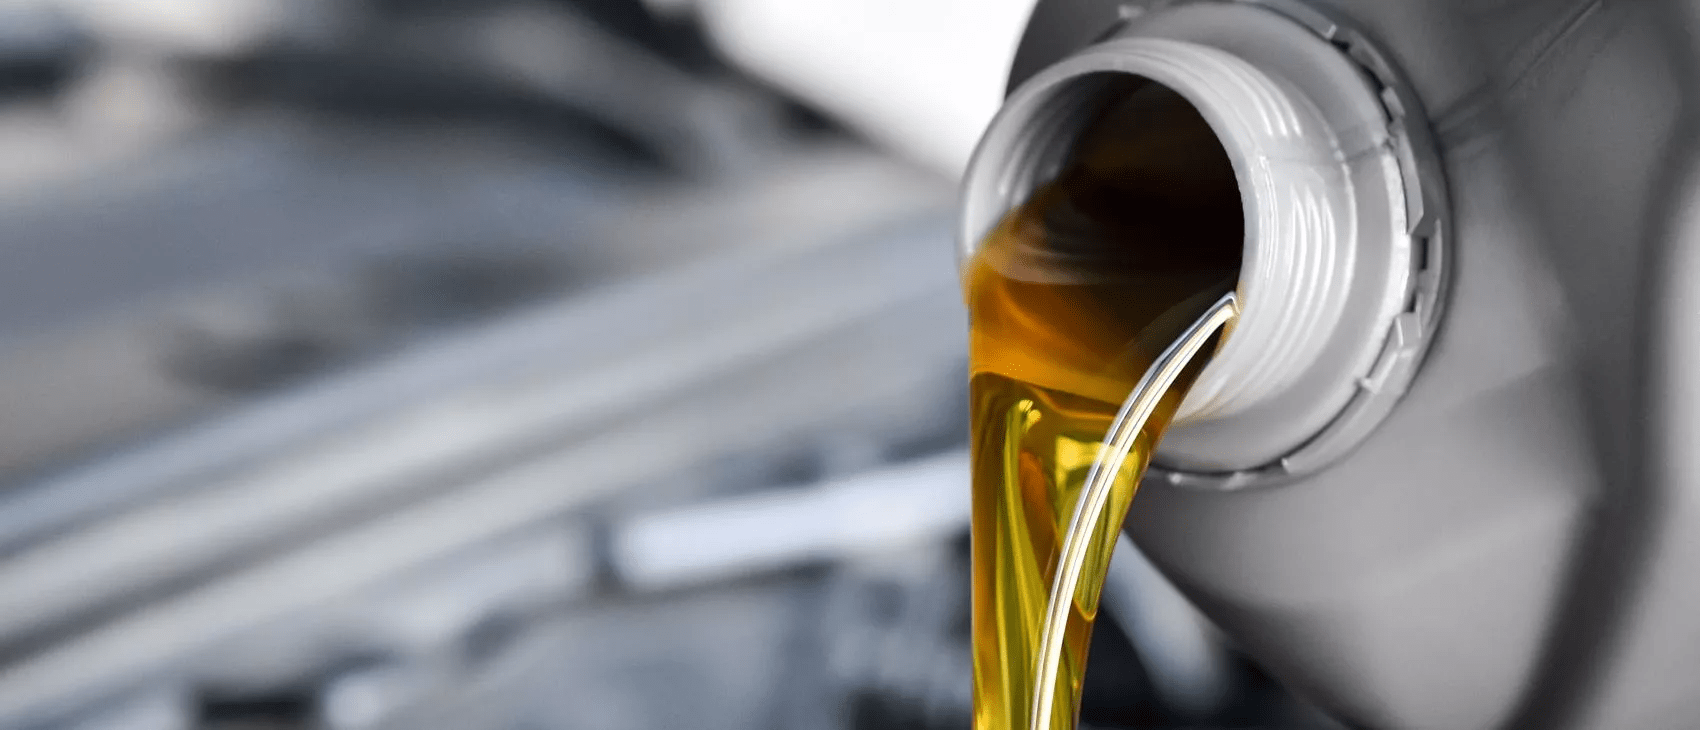 Можно ли смешивать моторные масла разных производителей